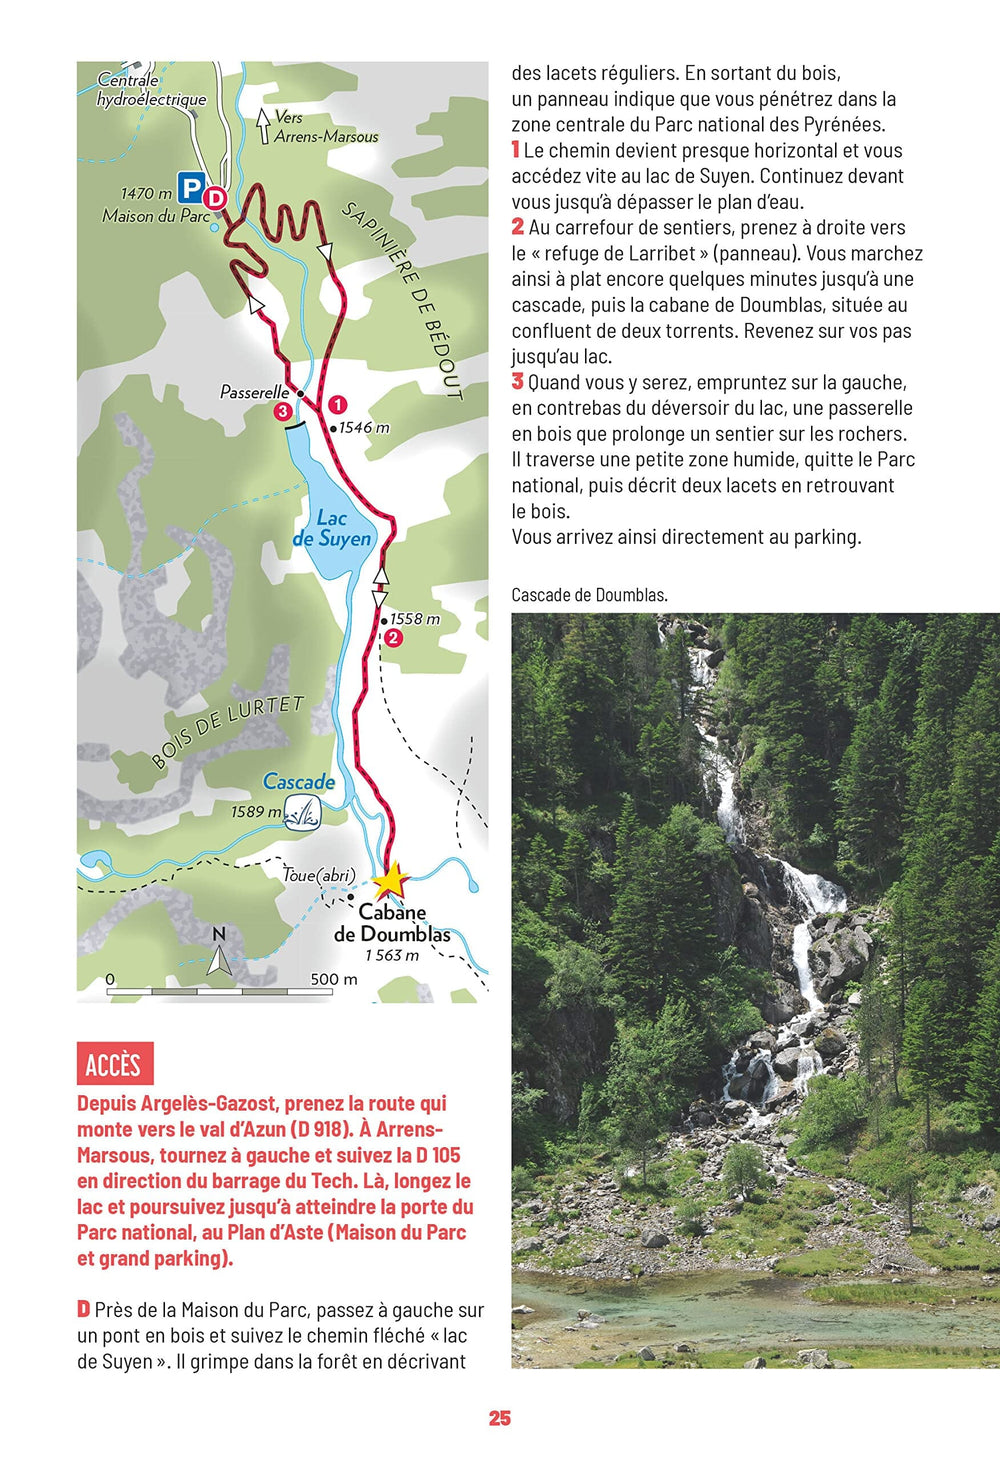 Guide de promenades - Hautes-Pyrénées, vol.1 (Lourdes-Gavarnie) | Rando Editions - Les Sentiers d'Emilie guide petit format Rando Editions 